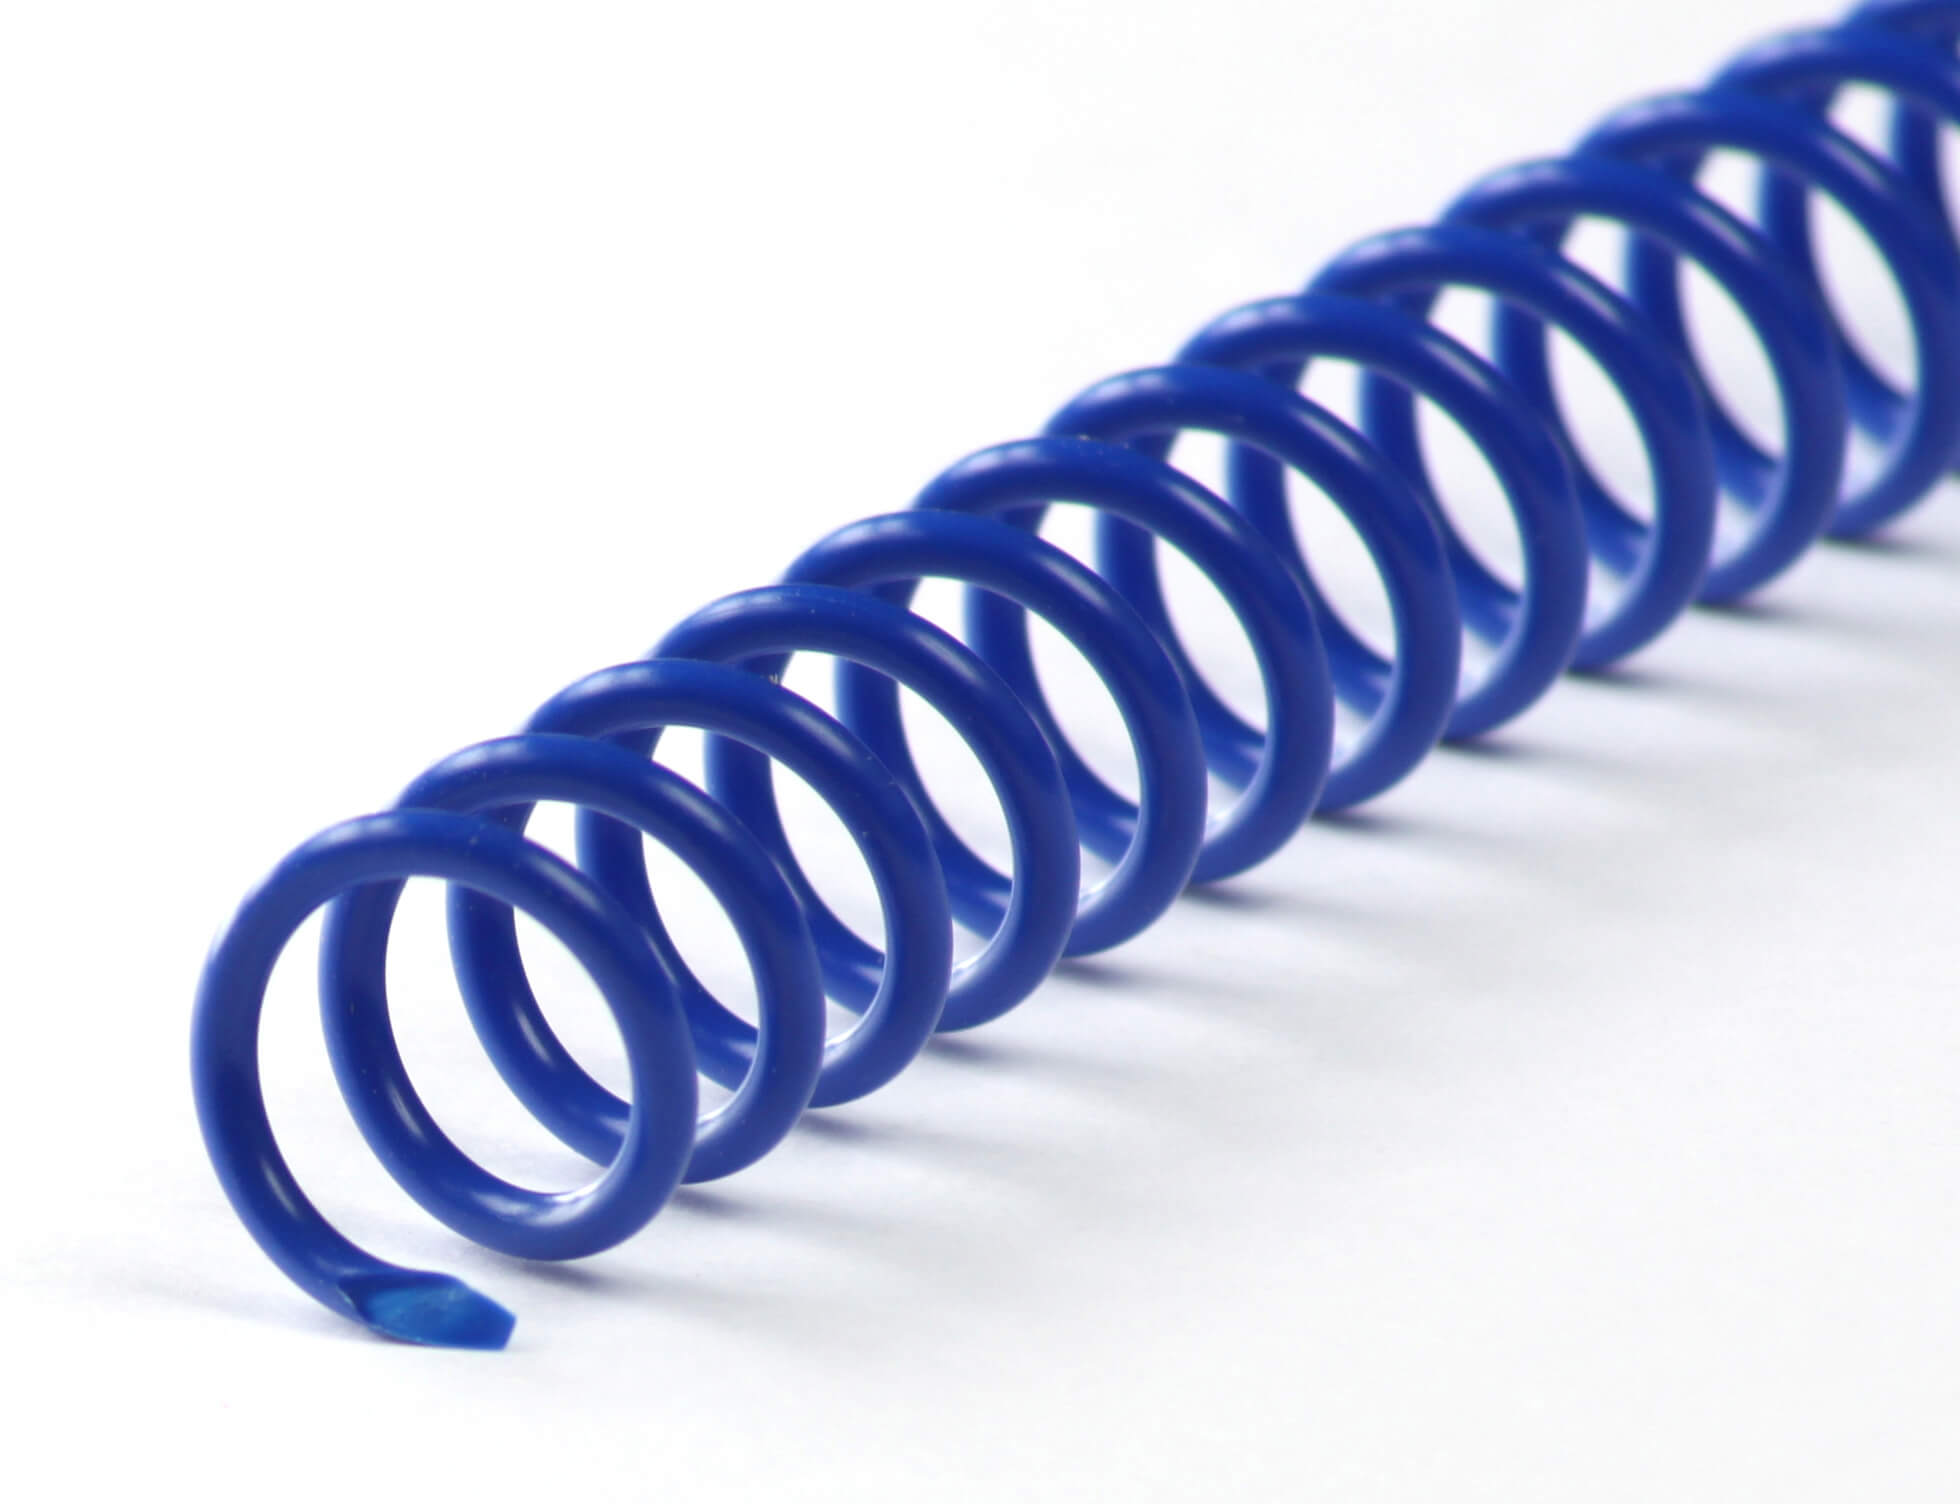 Binderücken CoilBind 47 Ringe 8mm, 4:1 Teilung blau | Bestnr. CC08-BL